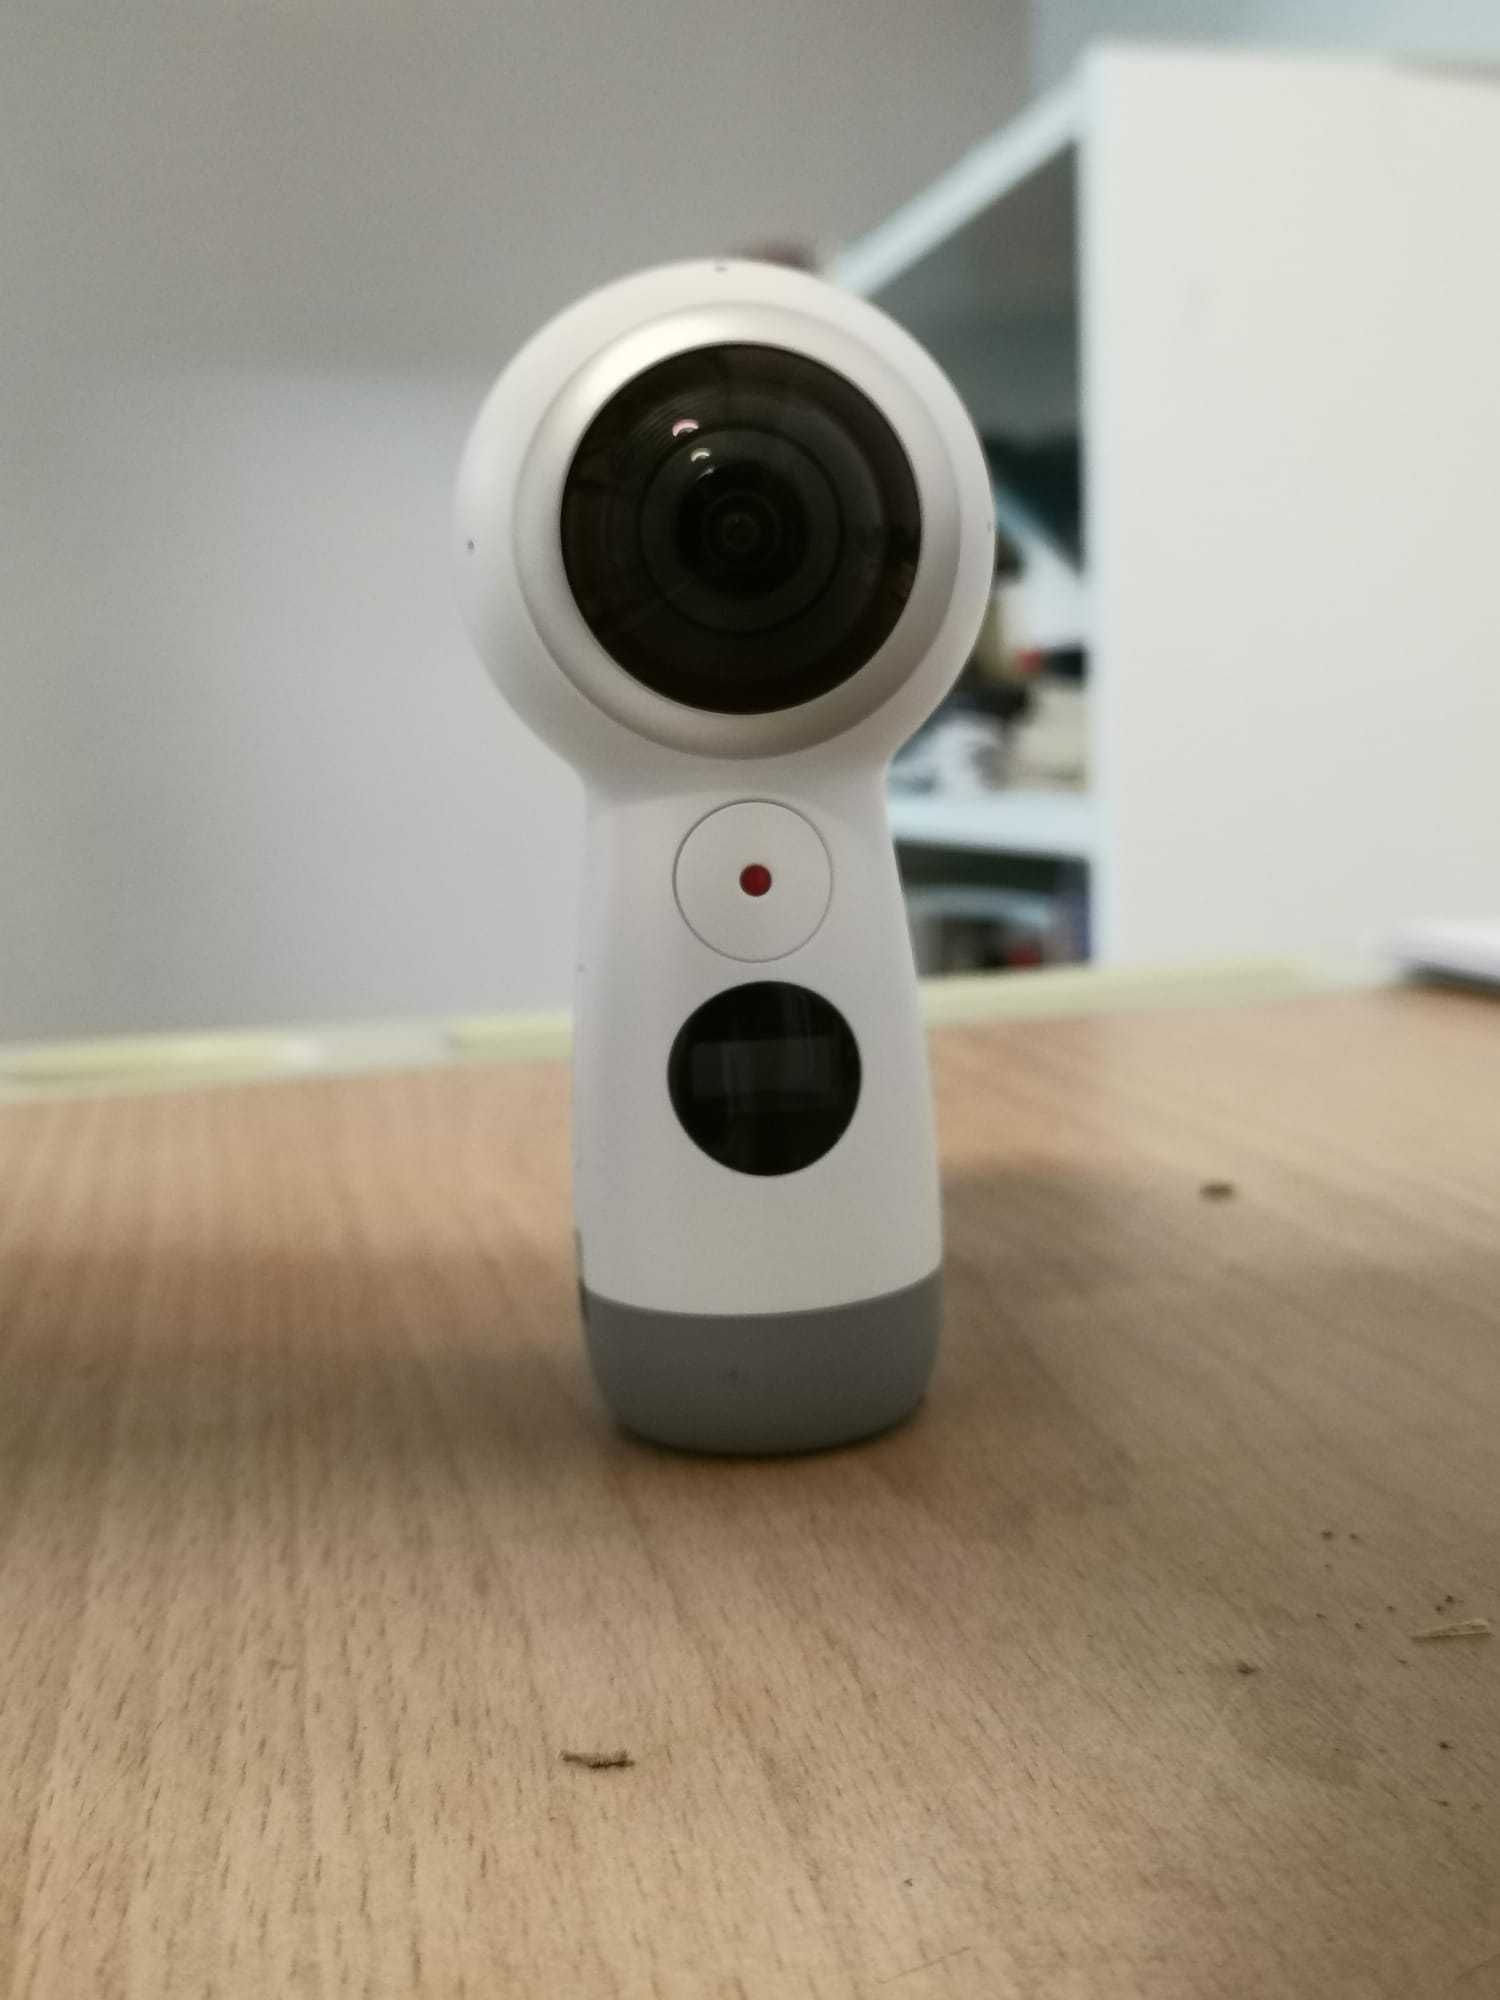 Camera samsung gear 360